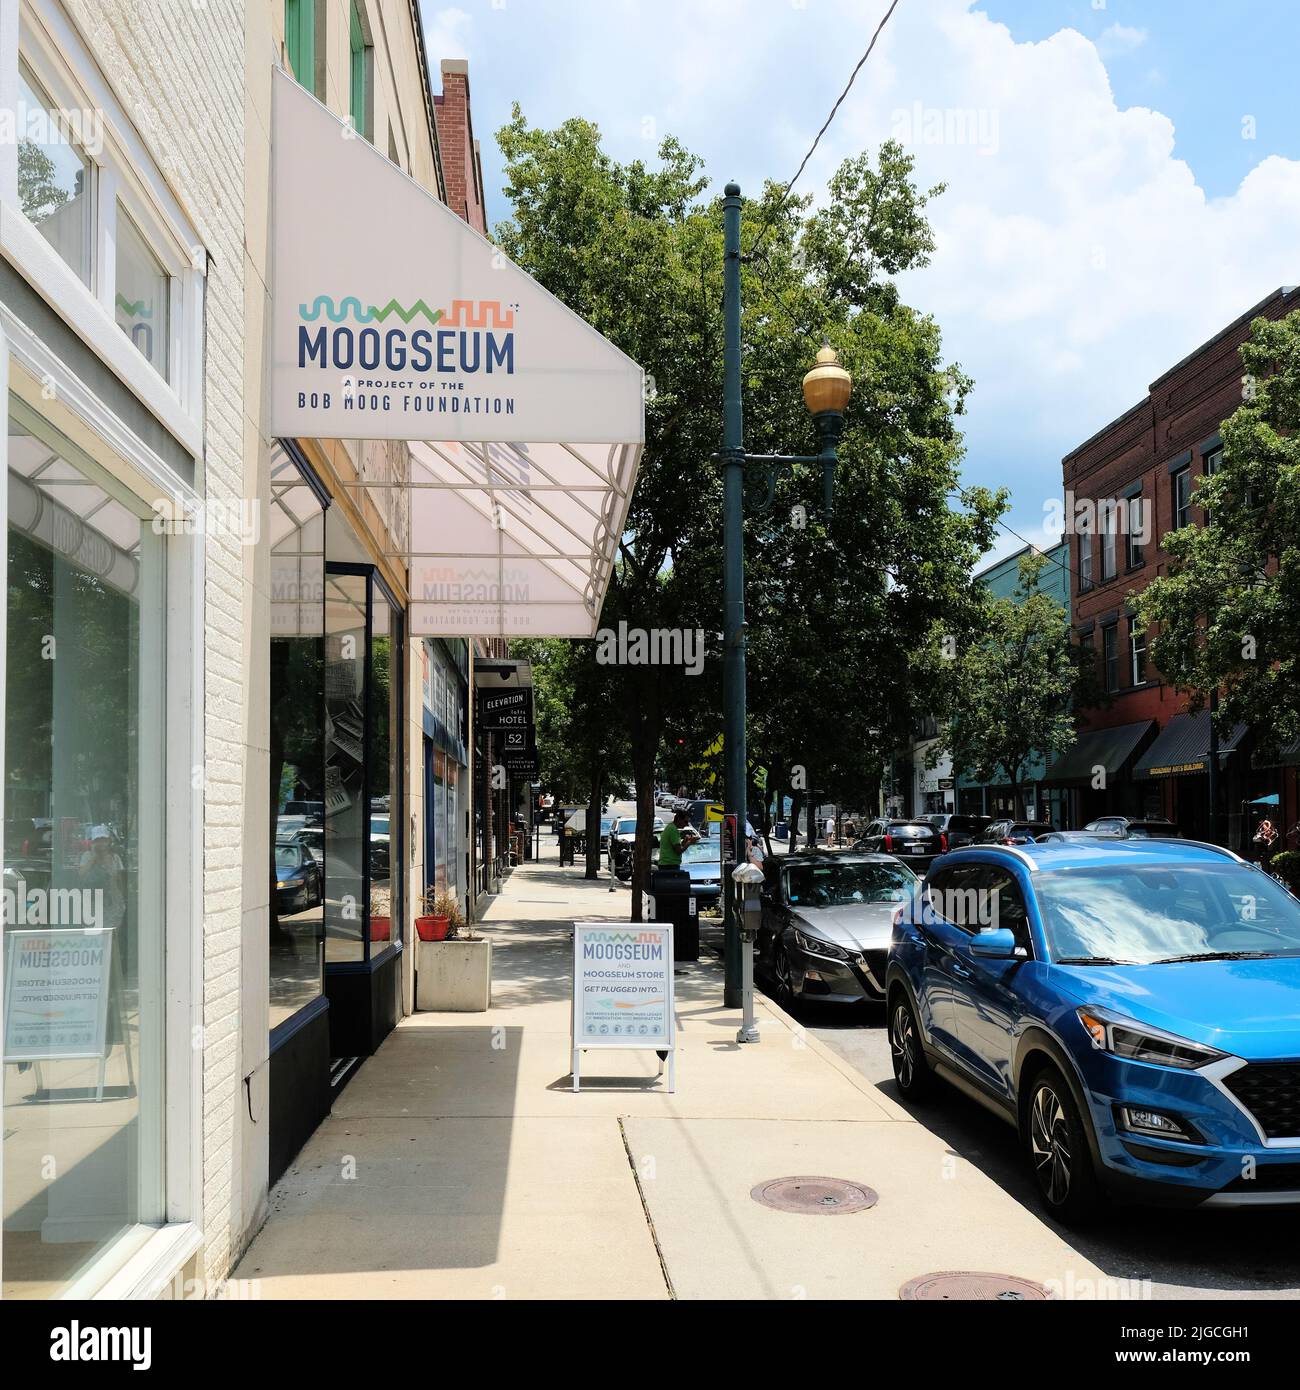 Vue extérieure du musée interactif et immersif Moogseum dans le centre-ville d'Asheville en Caroline du Nord ; projet caractéristique de la Fondation Bob Moog. Banque D'Images